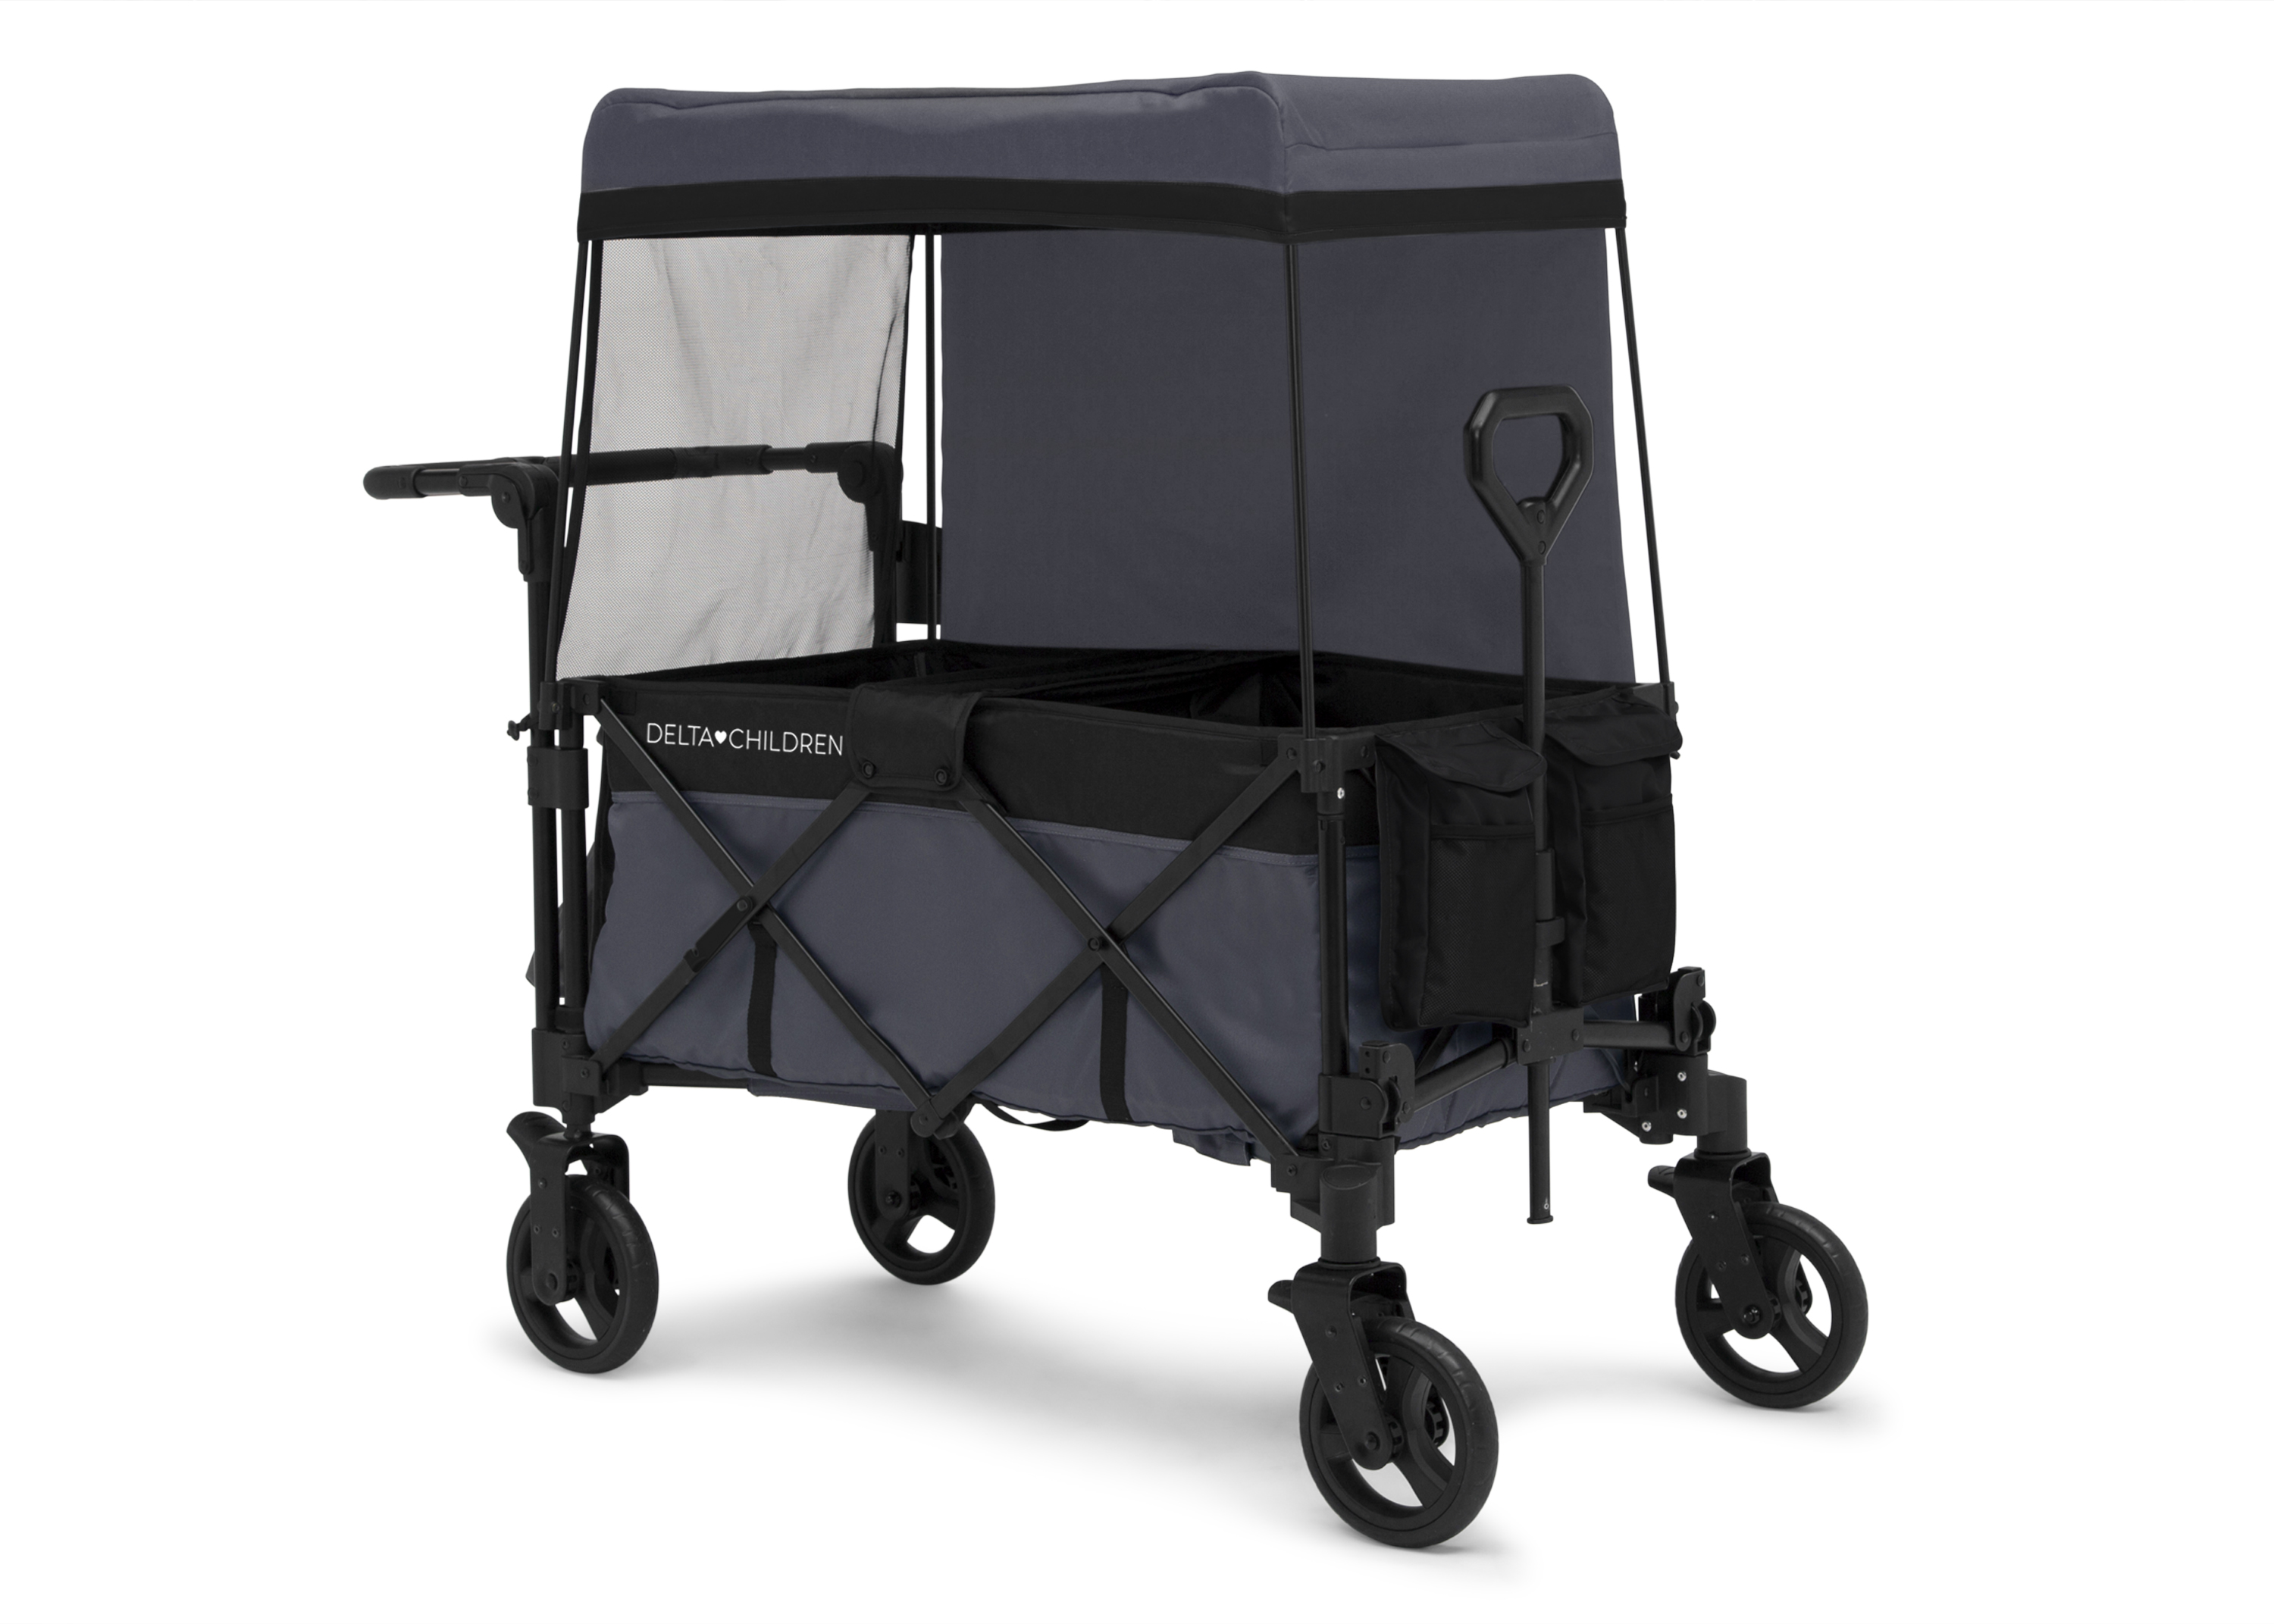 Delta Children Adventure Stroller Wagon, Grey/Black - image 5 of 10